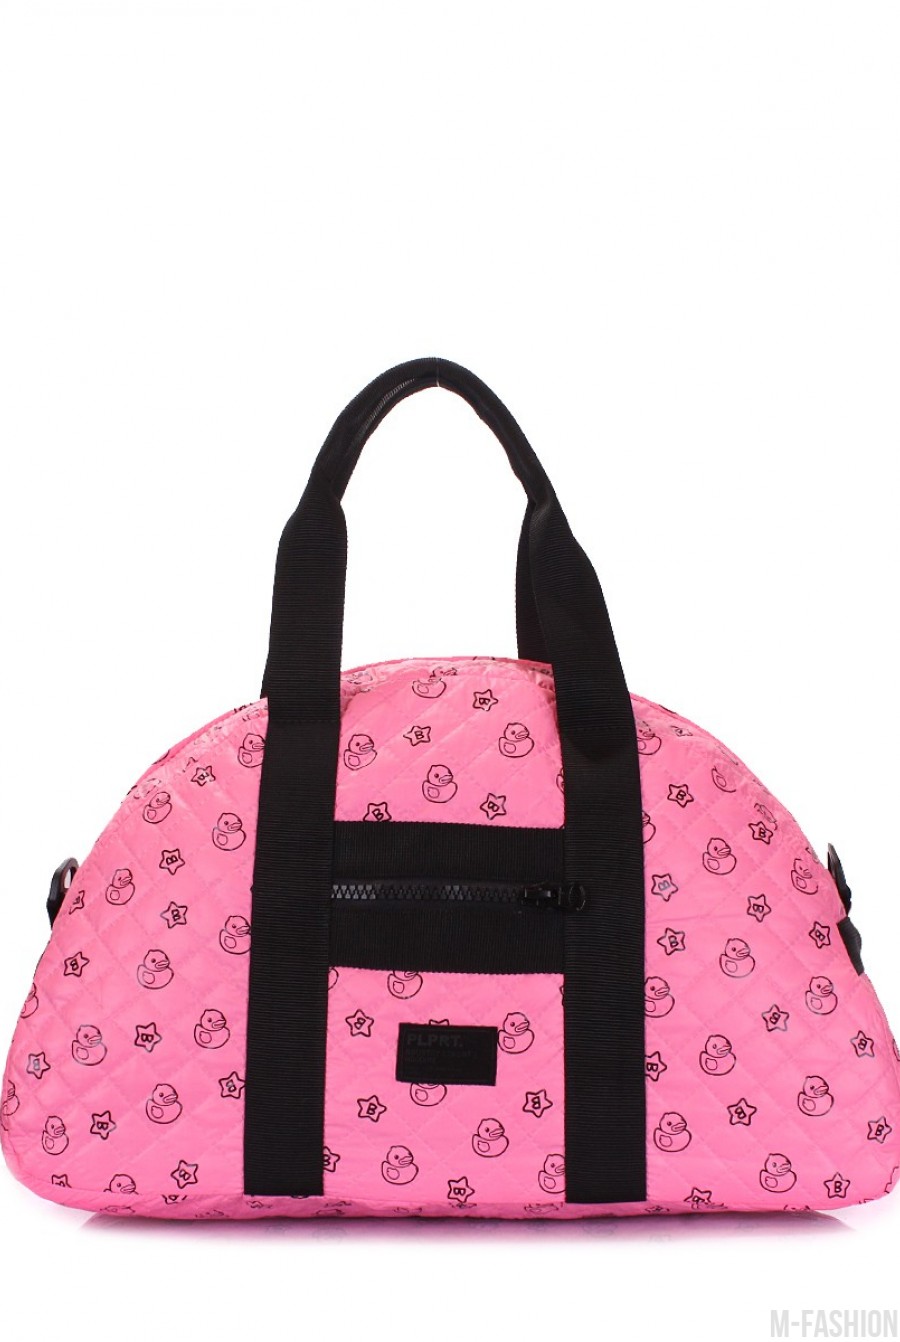 Стеганая дорожная сумка с розовой расцветкой и позитивным принтом - Фото 1